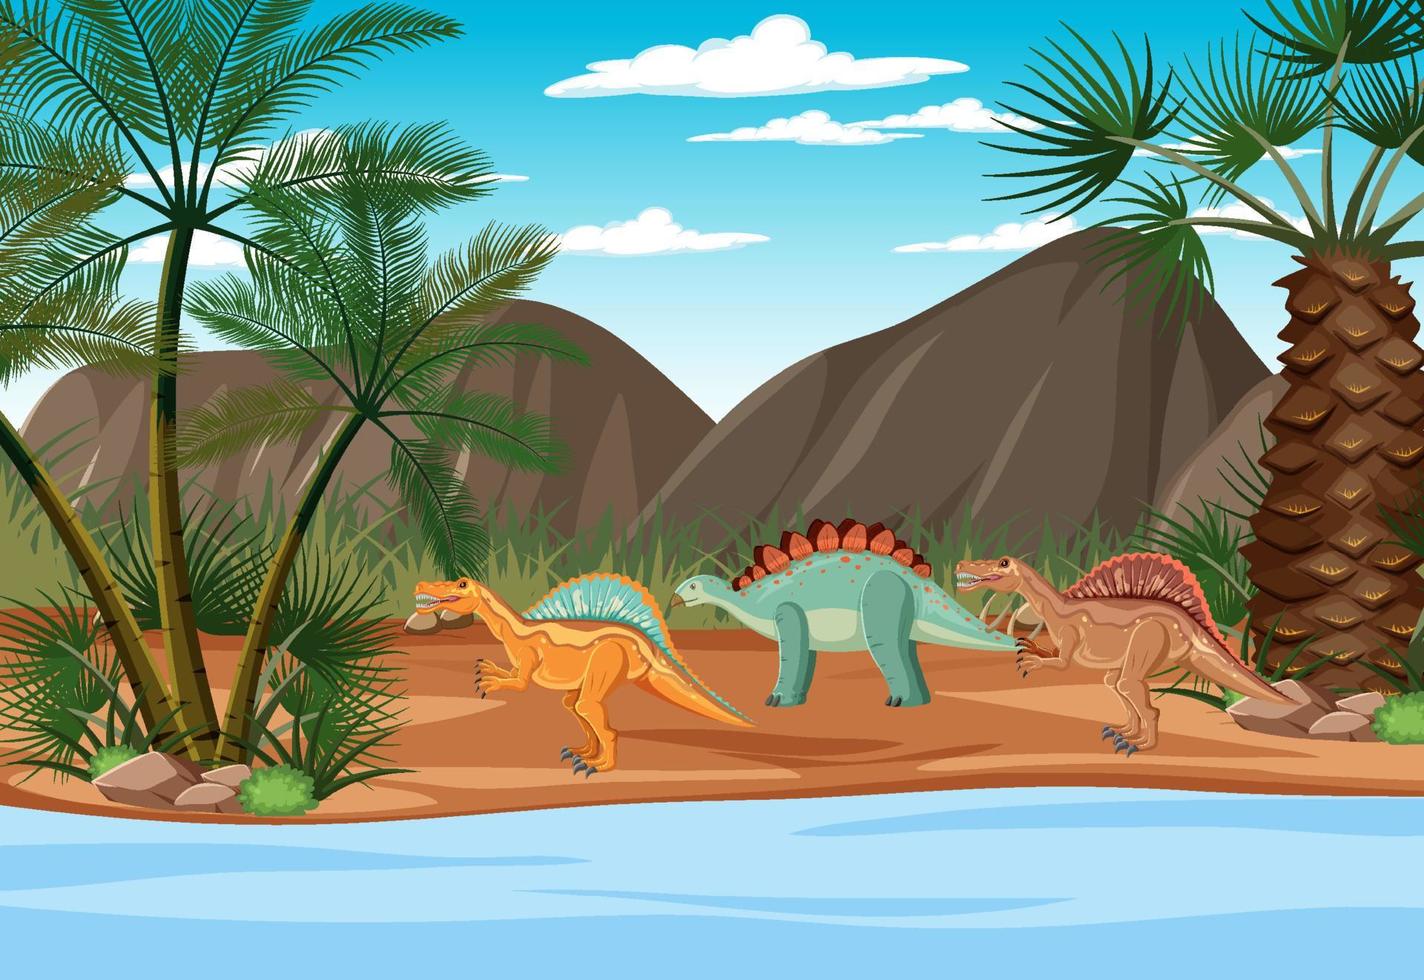 dinosaurier in der prähistorischen waldszene vektor